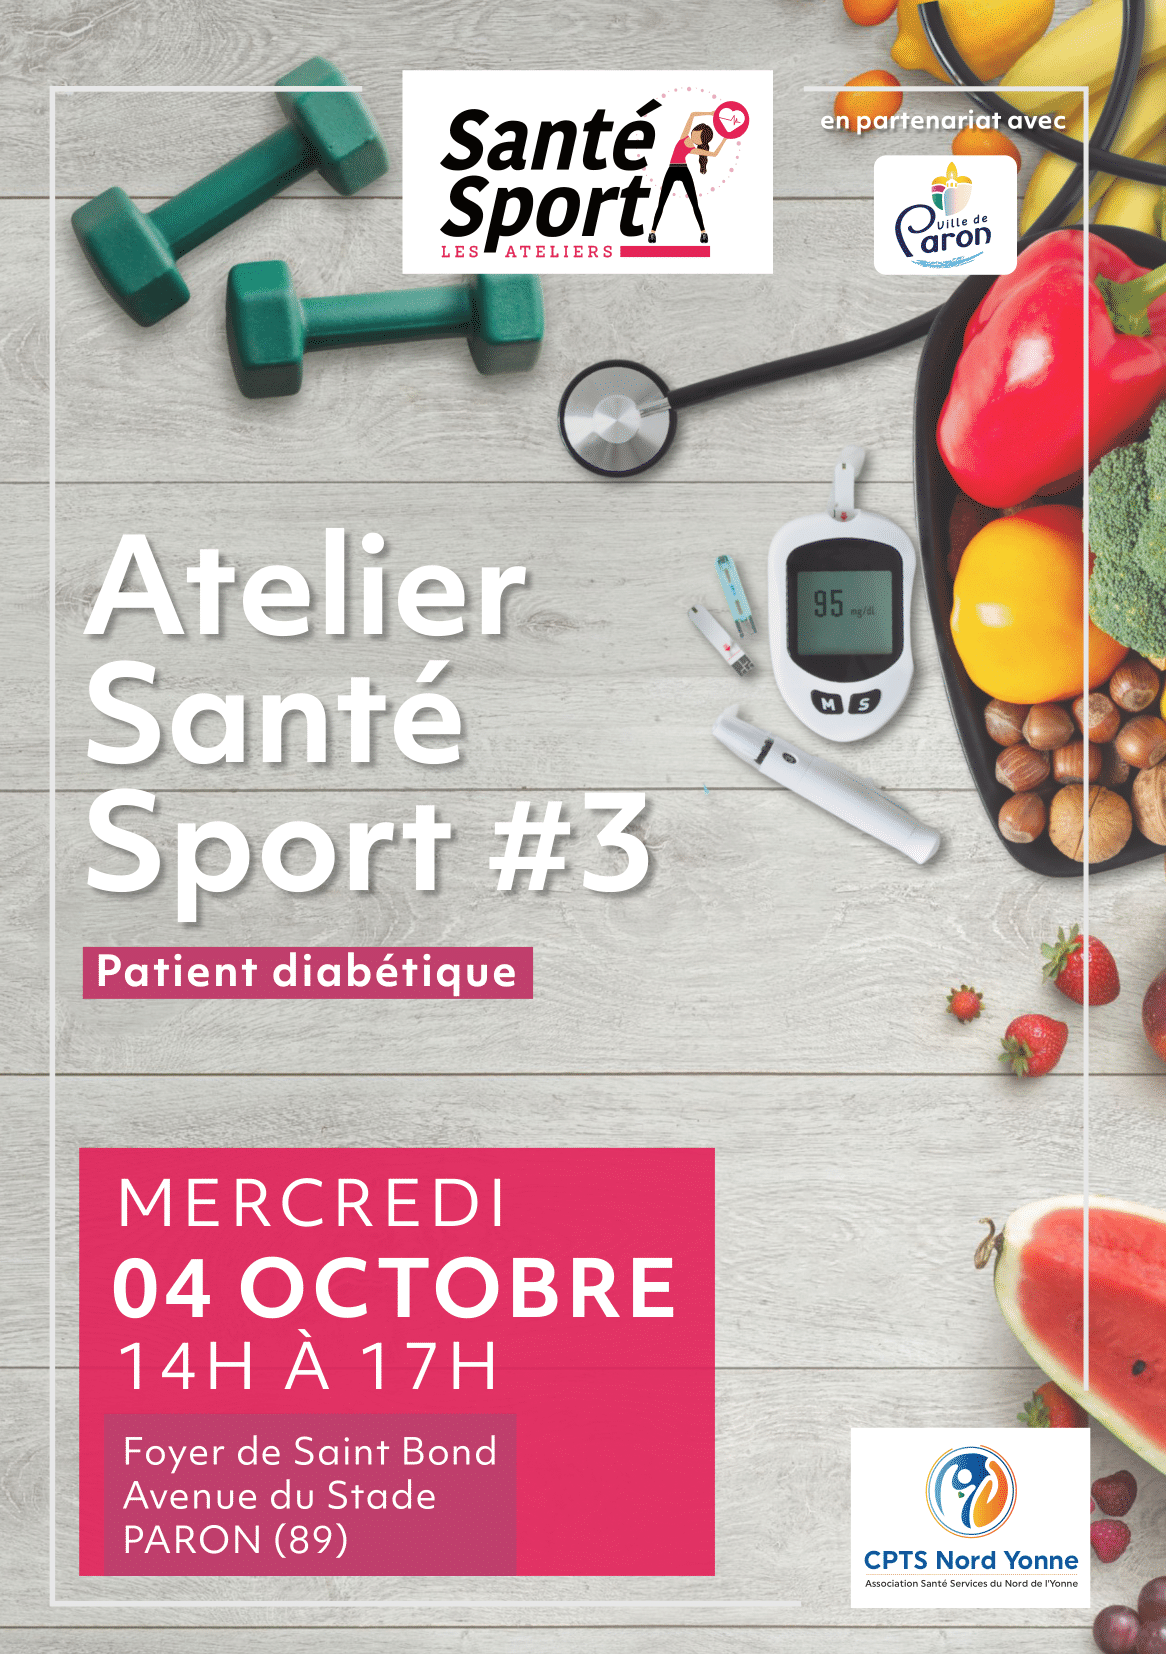 Atelier Santé Sport #3 - Mercredi 04 Octobre de 14h00 à 17h00